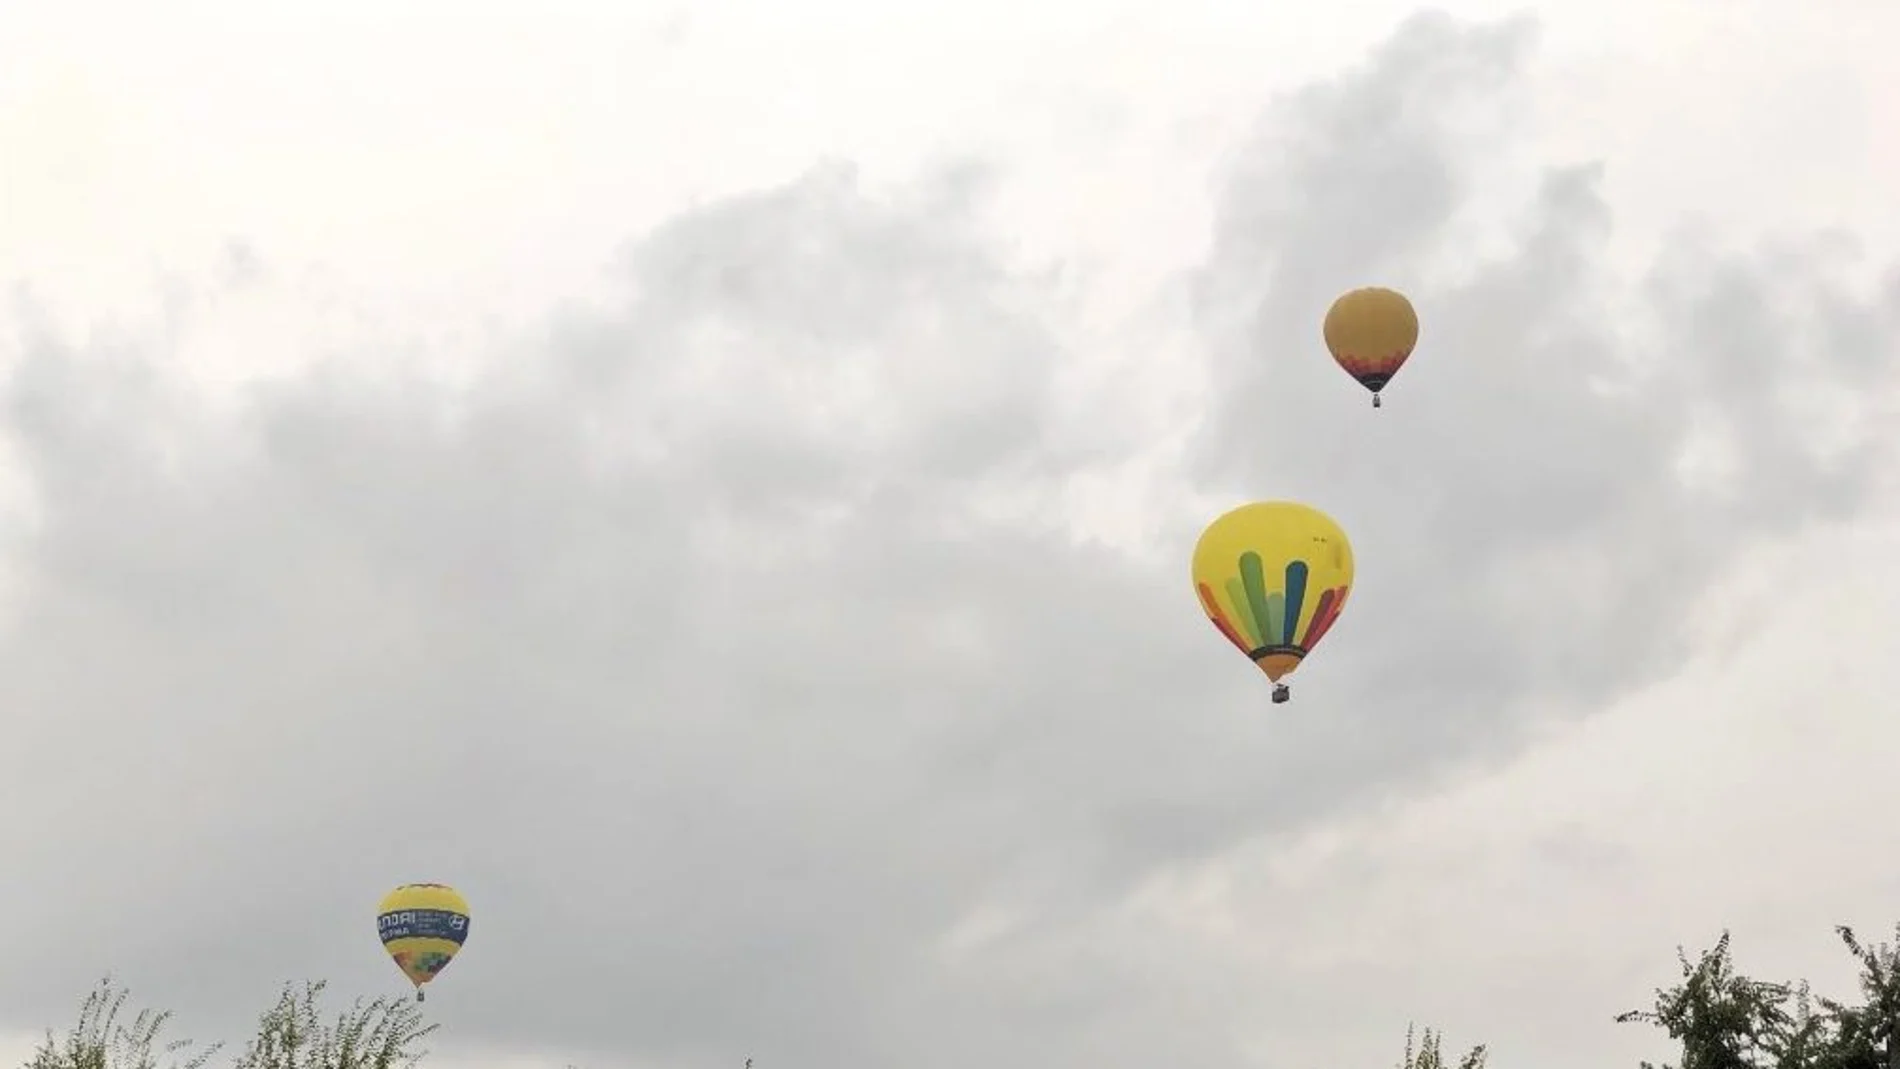 Dos de los globos aerostáticos que recorrían ayer el cielo de Murcia tuvieron problemas para aterrizar en el lugar previsto y provocaron heridas leves a tres de los pasajeros al precipitarse las cestas en las que viajaban. LA RAZÓN